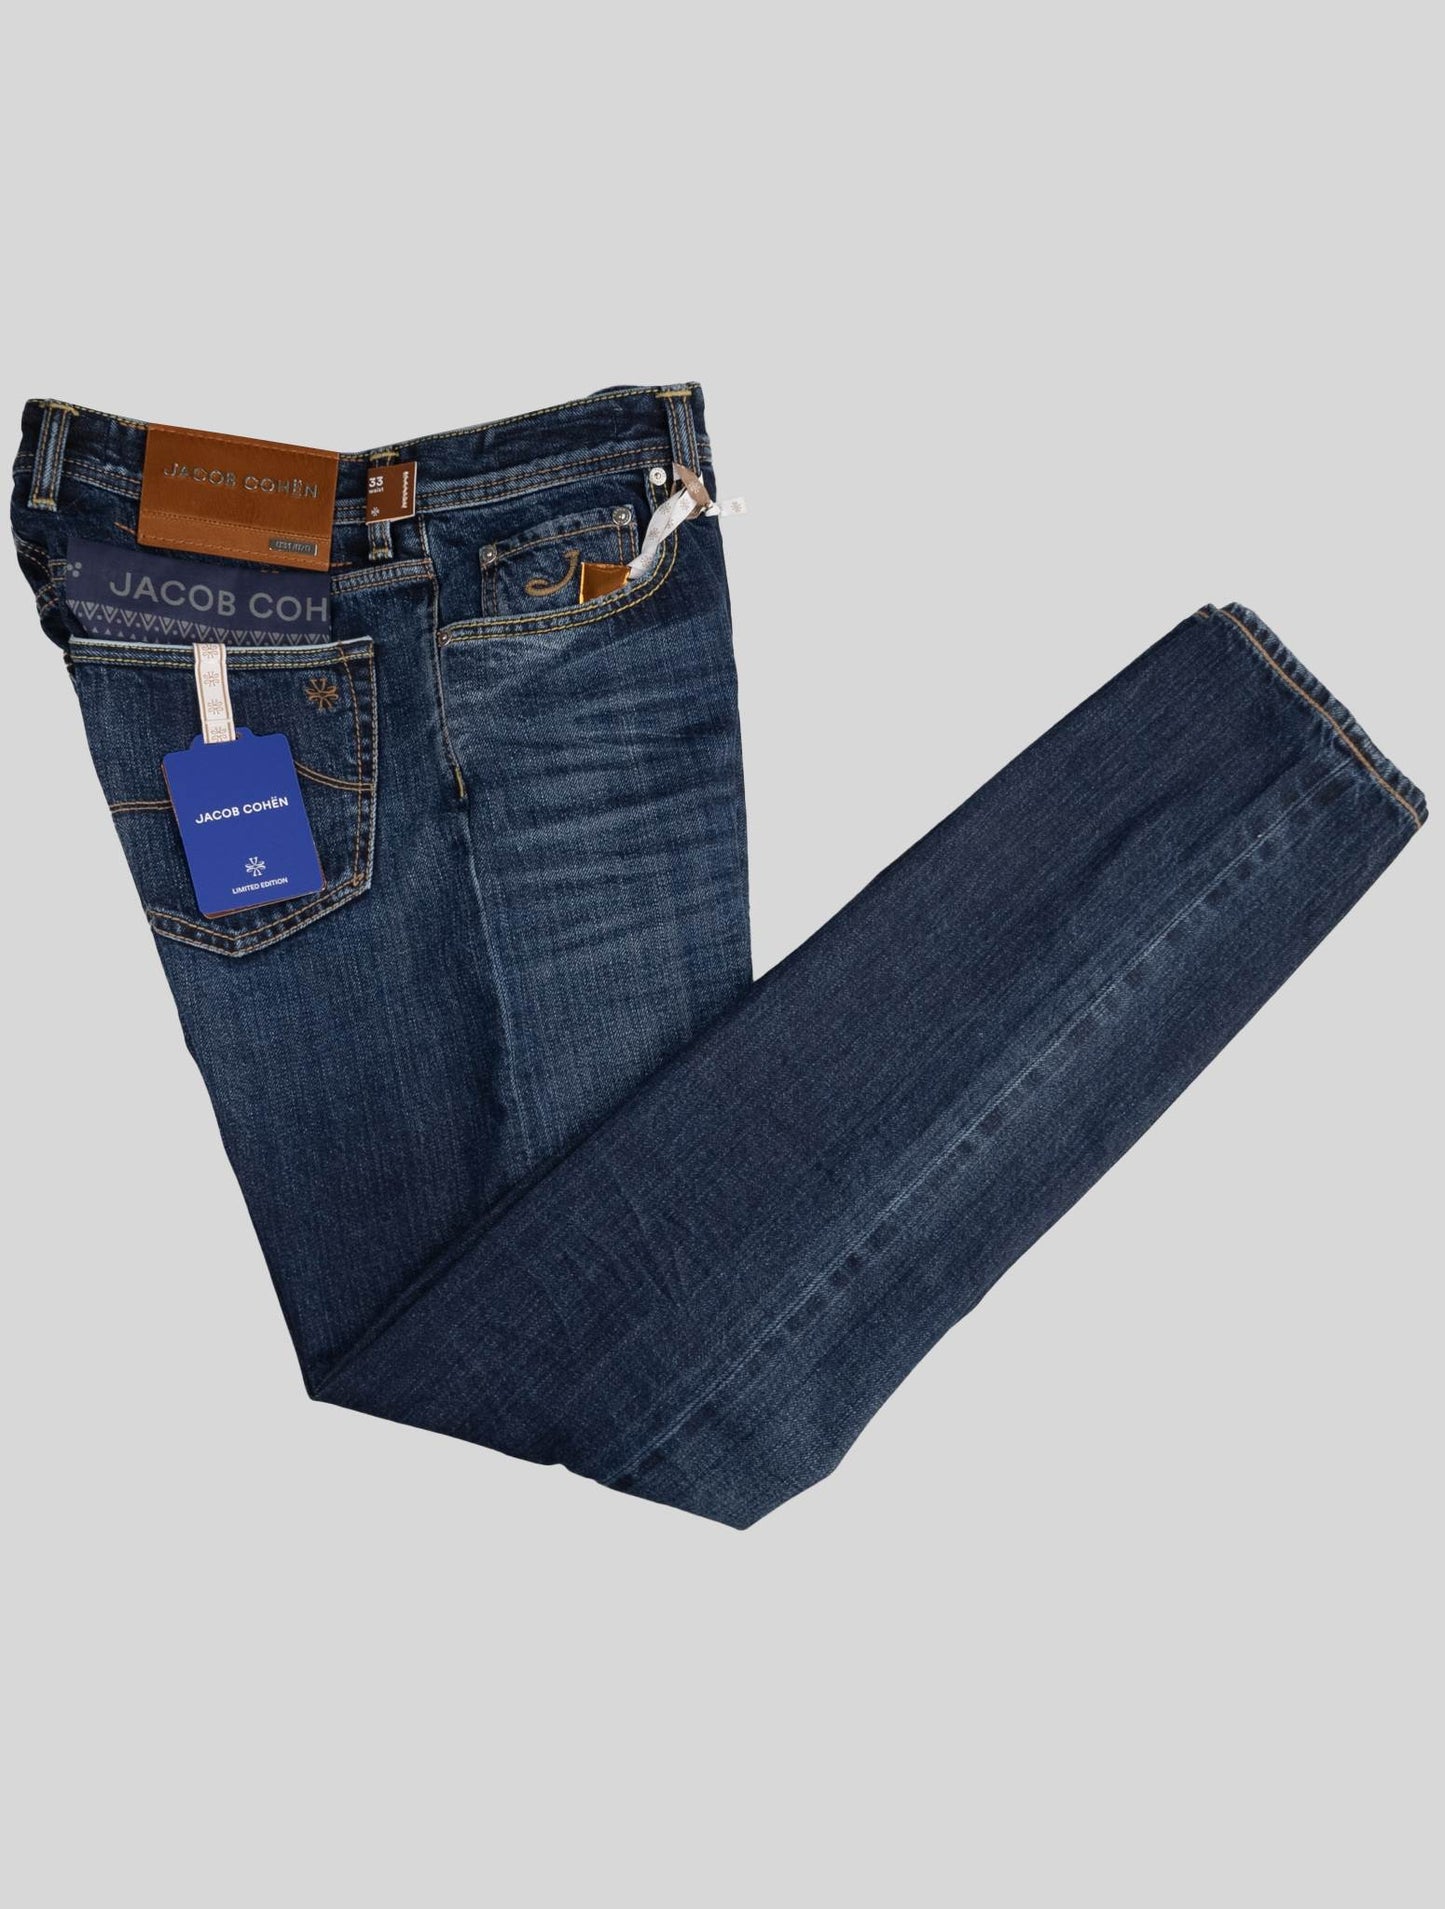 Jacob Cohen Blue Cotton Jeans Limited Edition